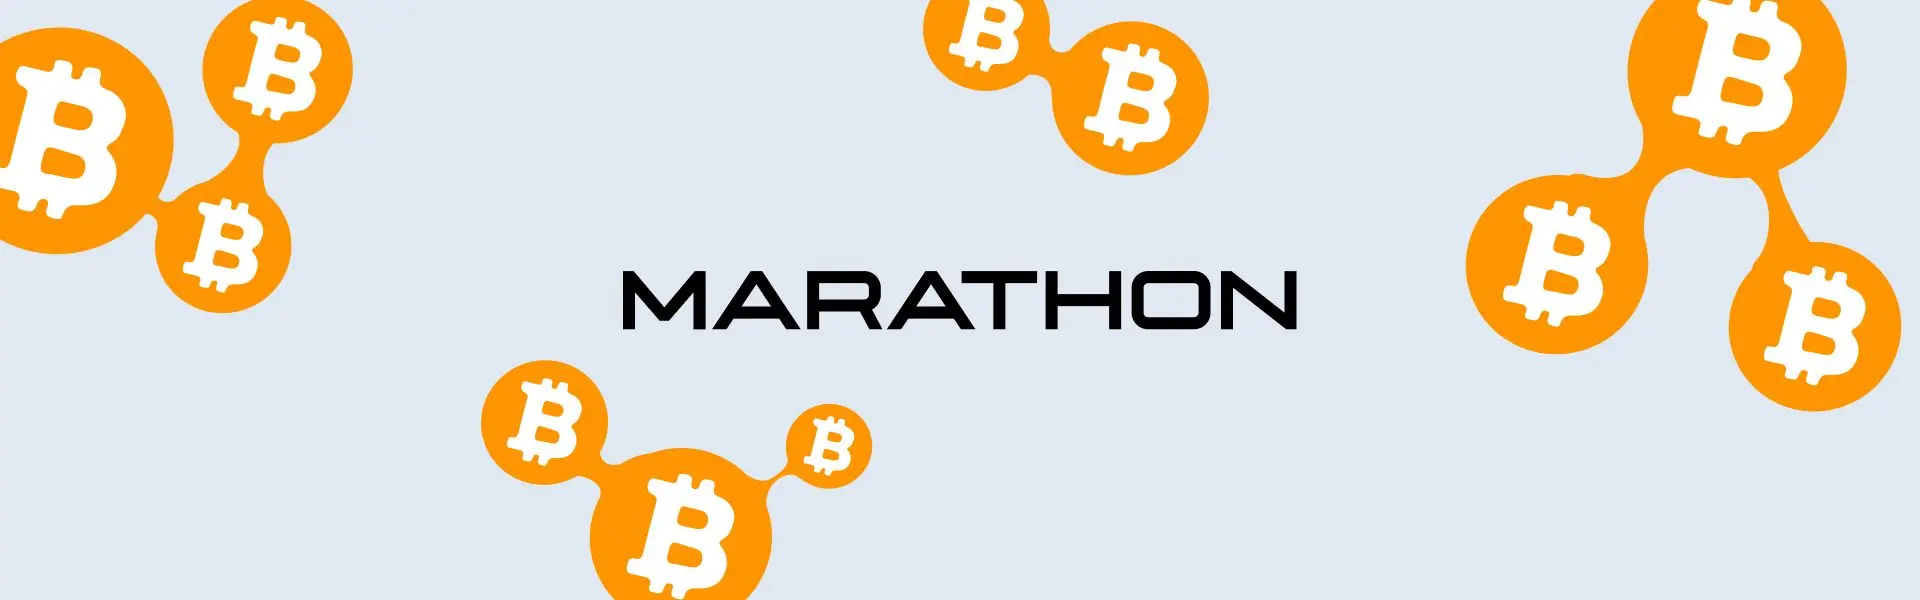 Marathon розробив сервіс для складних транзакцій з Bitcoin.